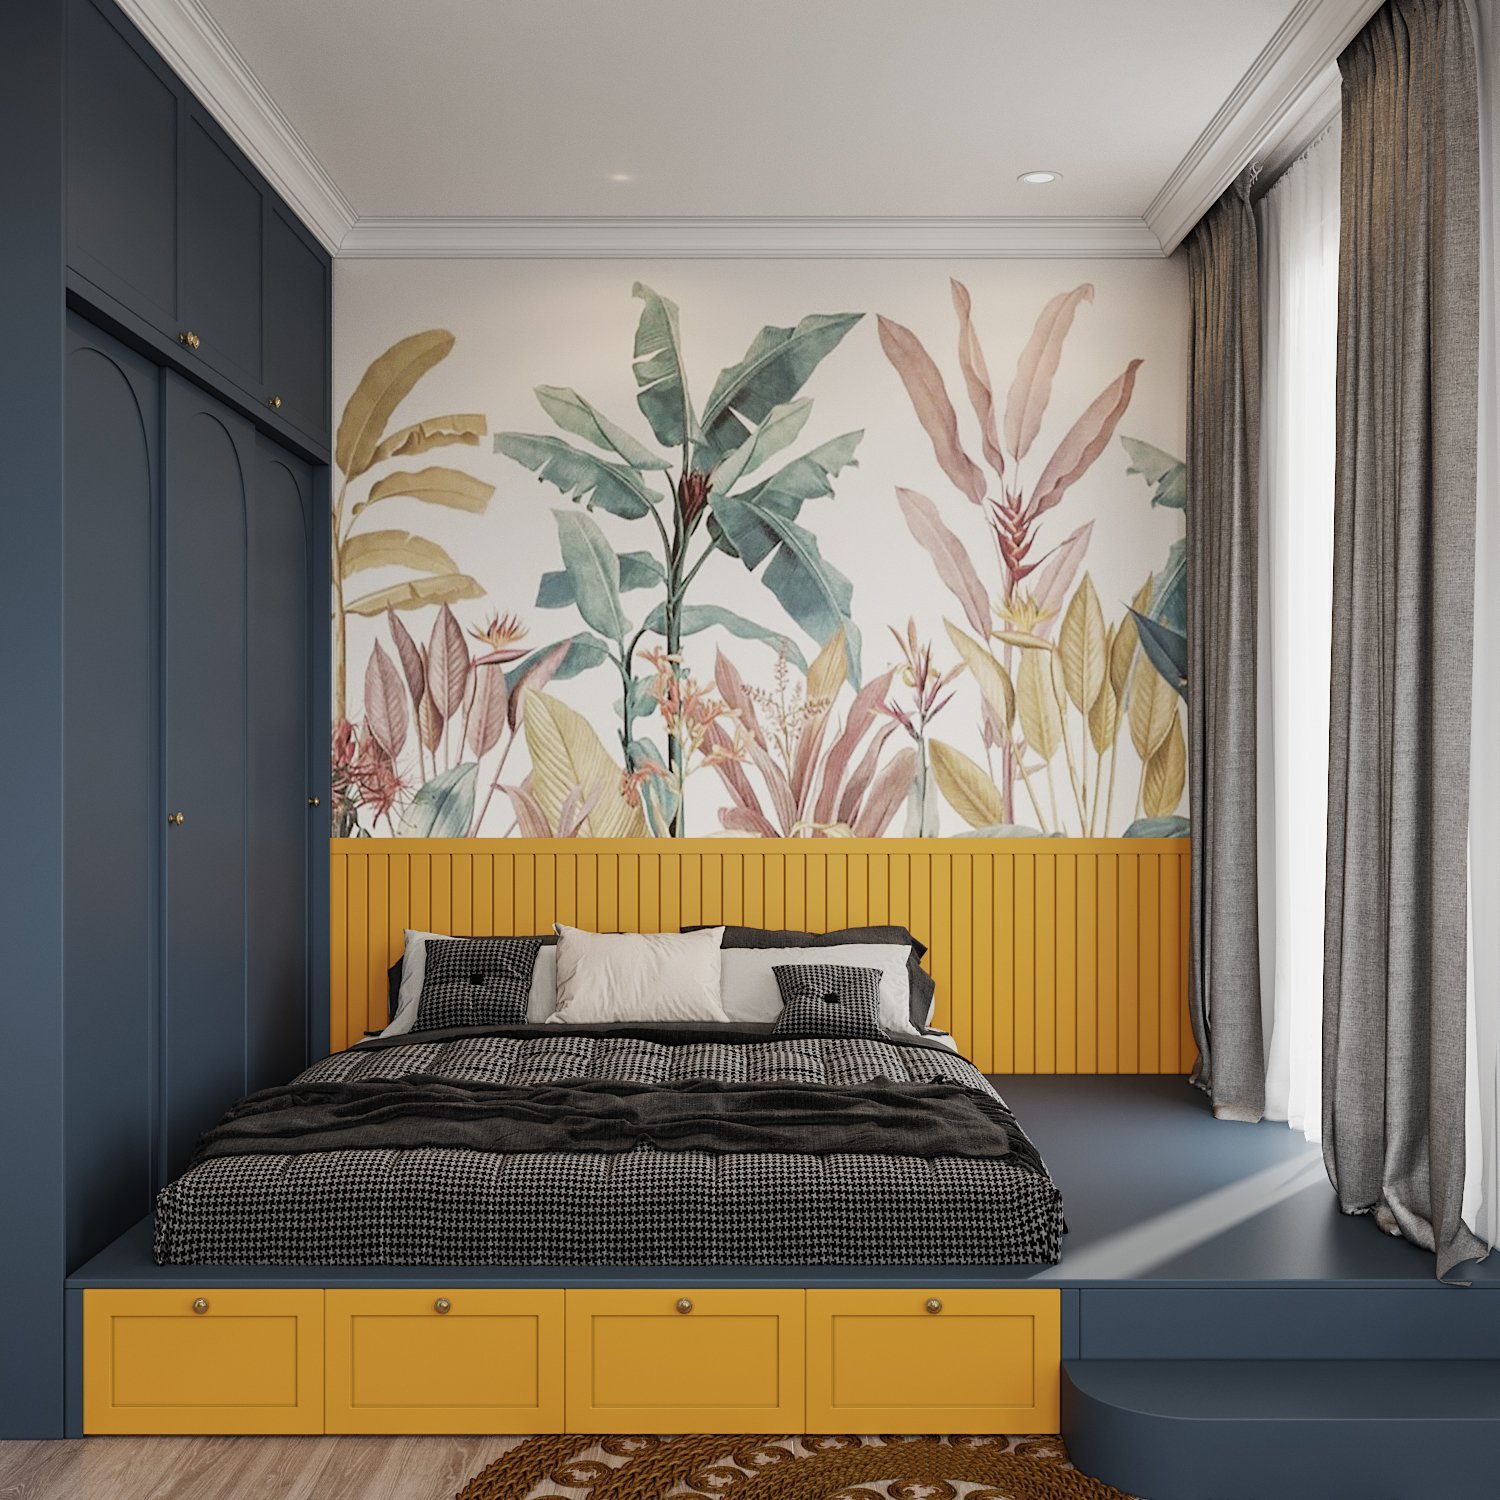 hình ảnh phòng ngủ với giường màu vàng chanh, tủ quần áo xám than, tranh tường họa tiết nhiệt đới